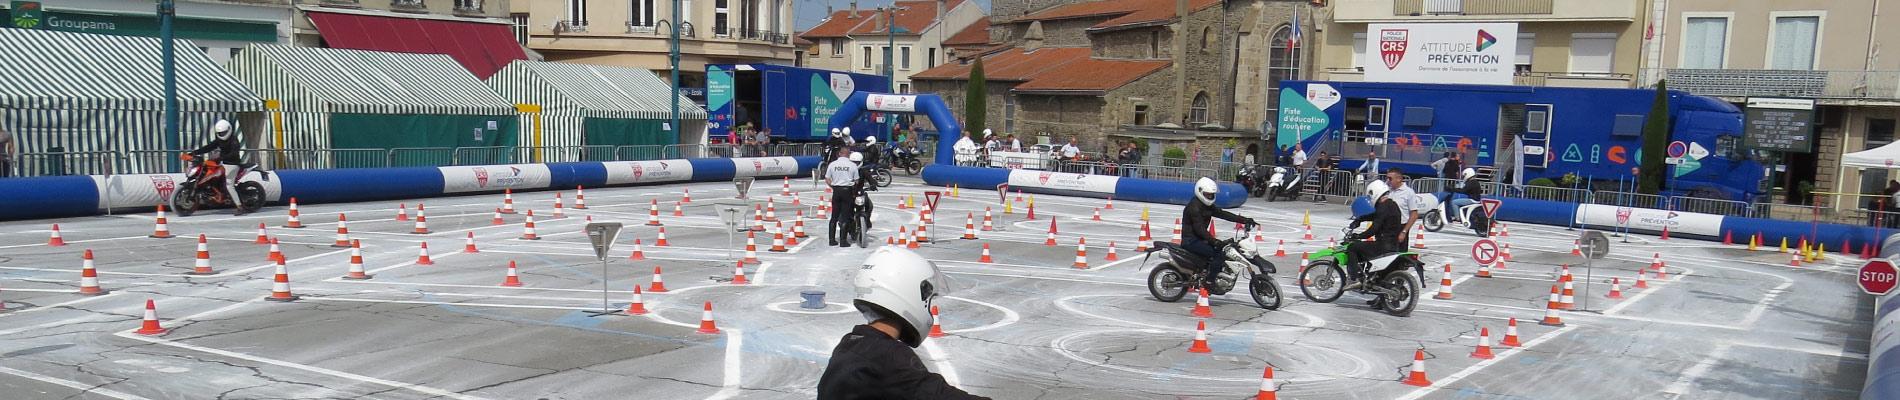 Initiation au deux-roues : les jeunes en piste pour la sécurité à Chazelles-sur-Lyon (42), du 28 au 31 mai